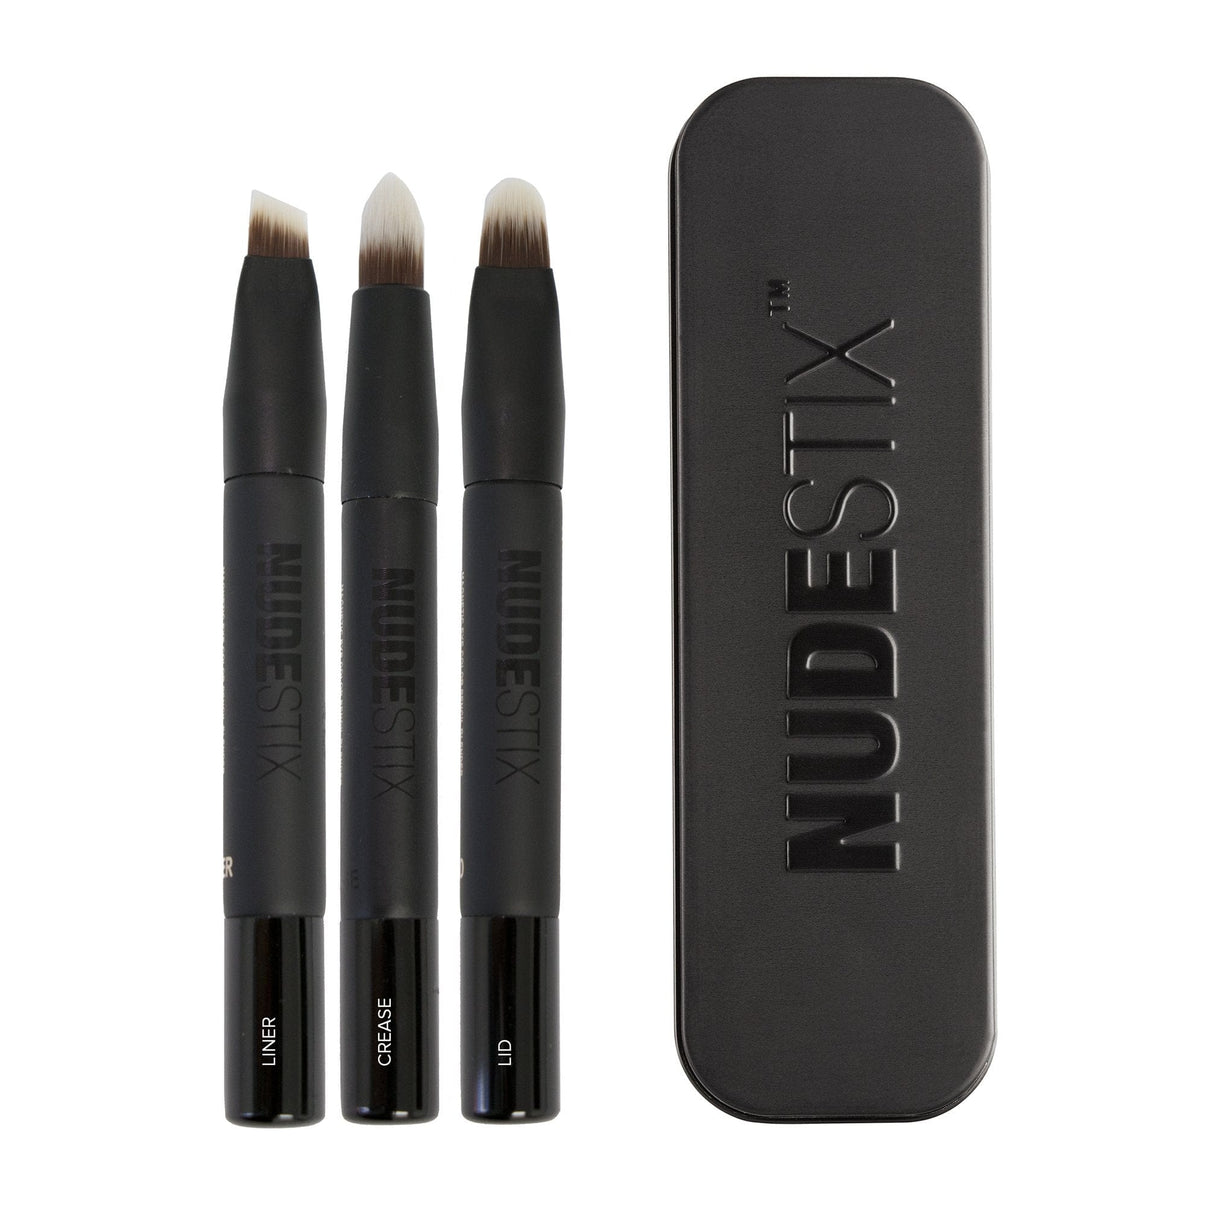 Pencil Blenders Makeup Brush set flat lay with nudestix can